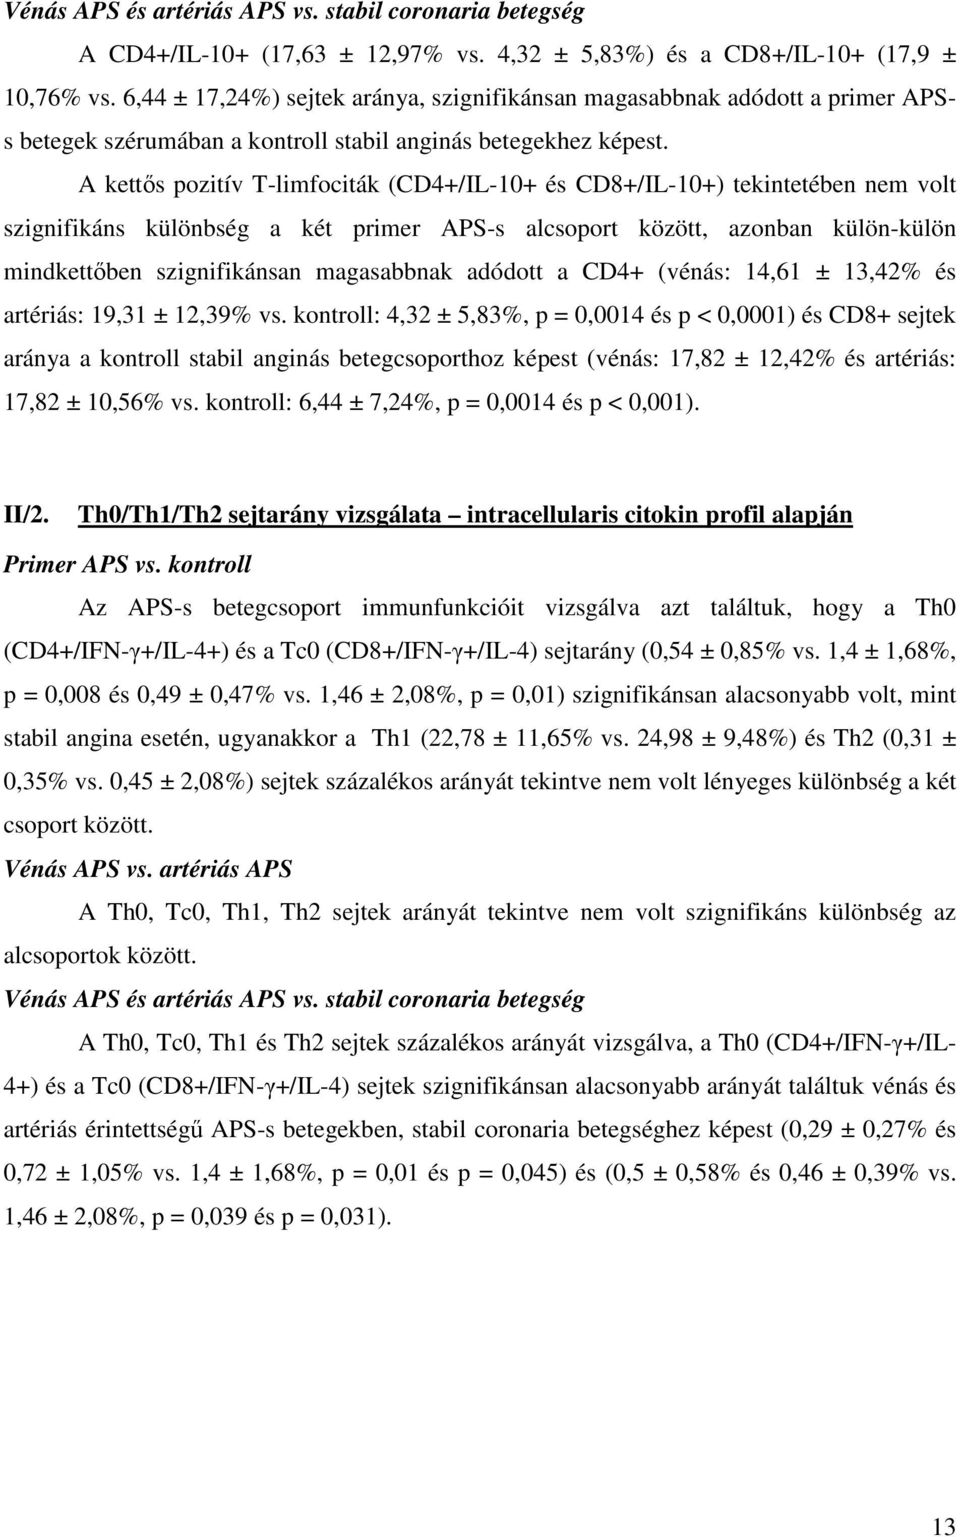 A kettıs pozitív T-limfociták (CD4+/IL-10+ és CD8+/IL-10+) tekintetében nem volt szignifikáns különbség a két primer APS-s alcsoport között, azonban külön-külön mindkettıben szignifikánsan